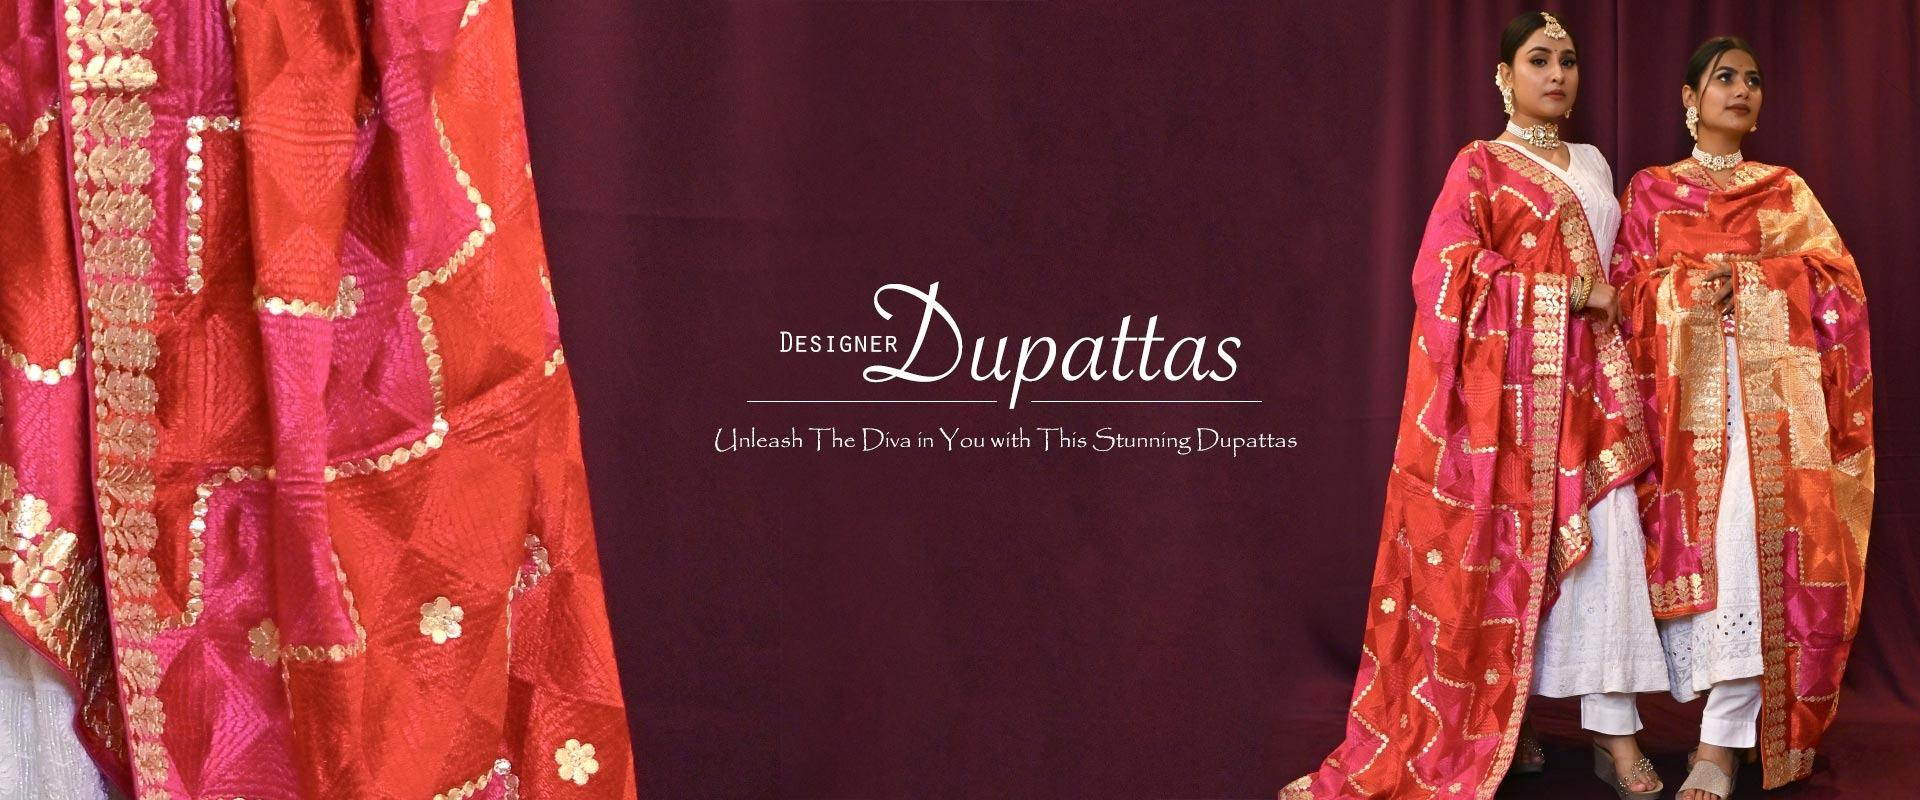 Designer Dupattas